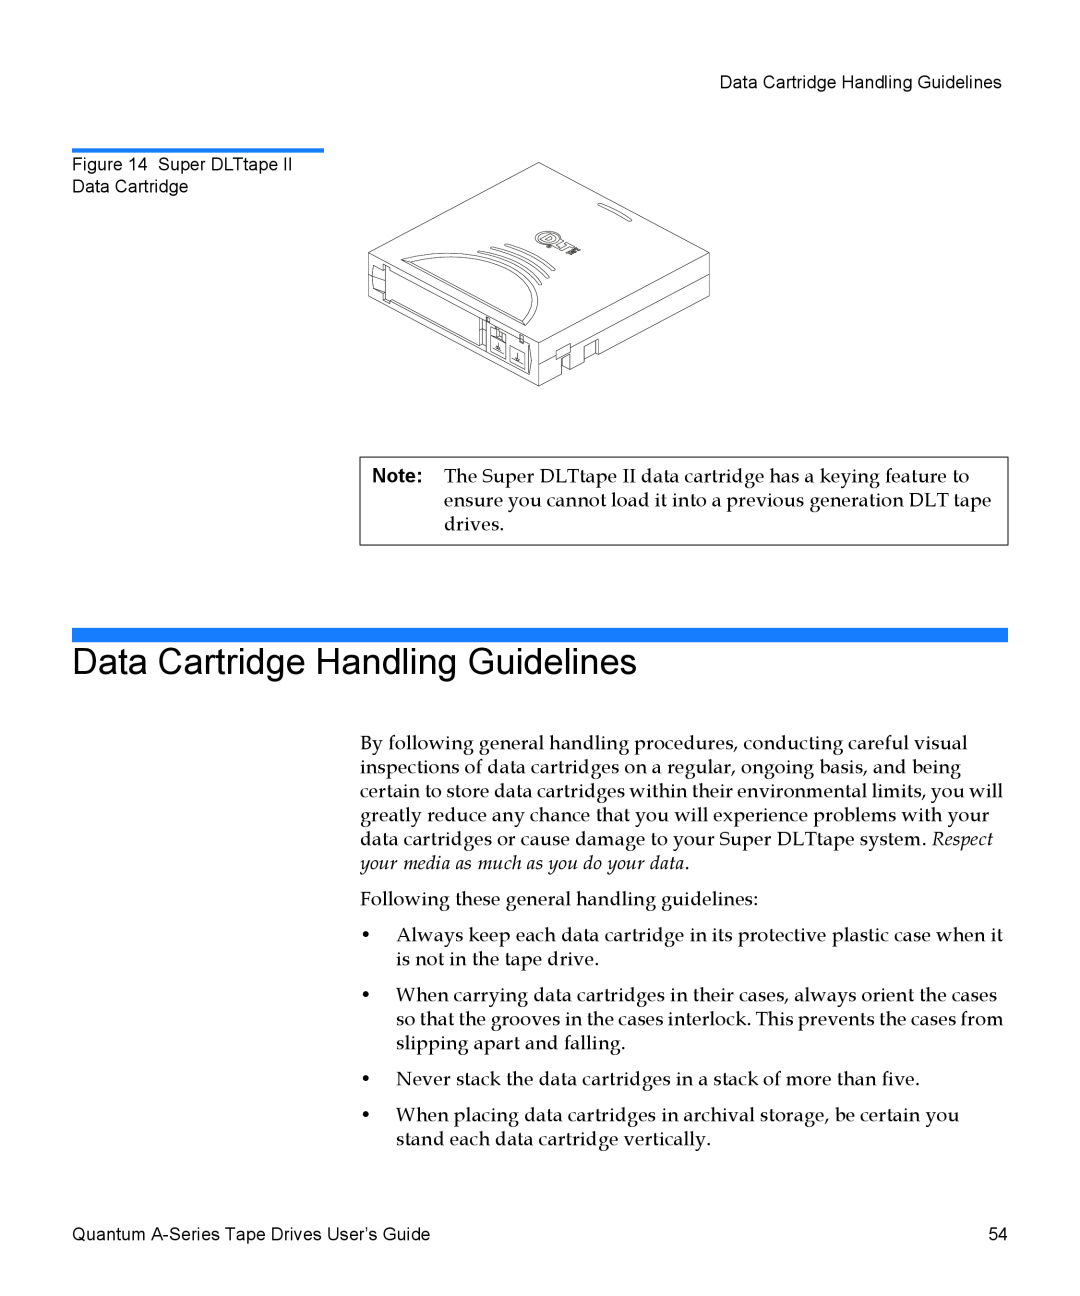 Quantum A-Series manual Data Cartridge Handling Guidelines 